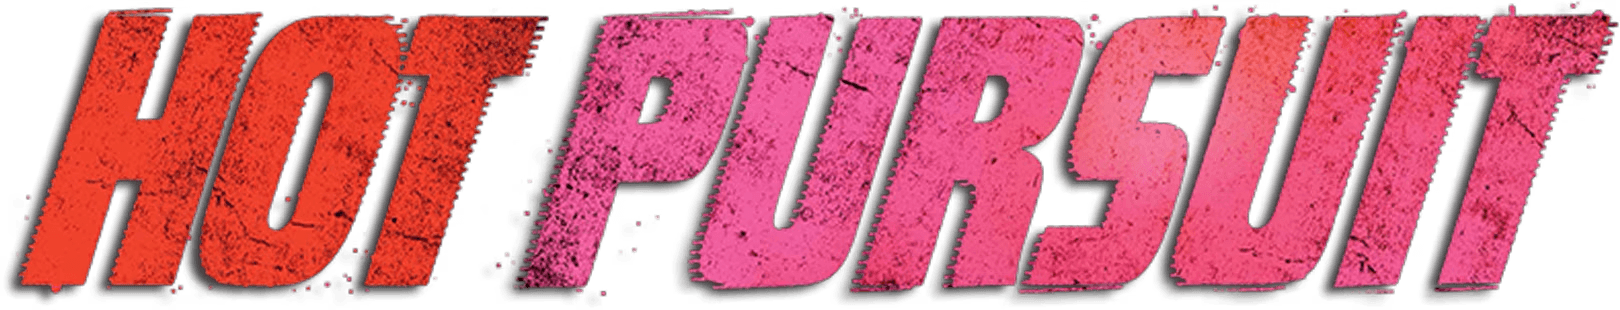 Hot Pursuit logo